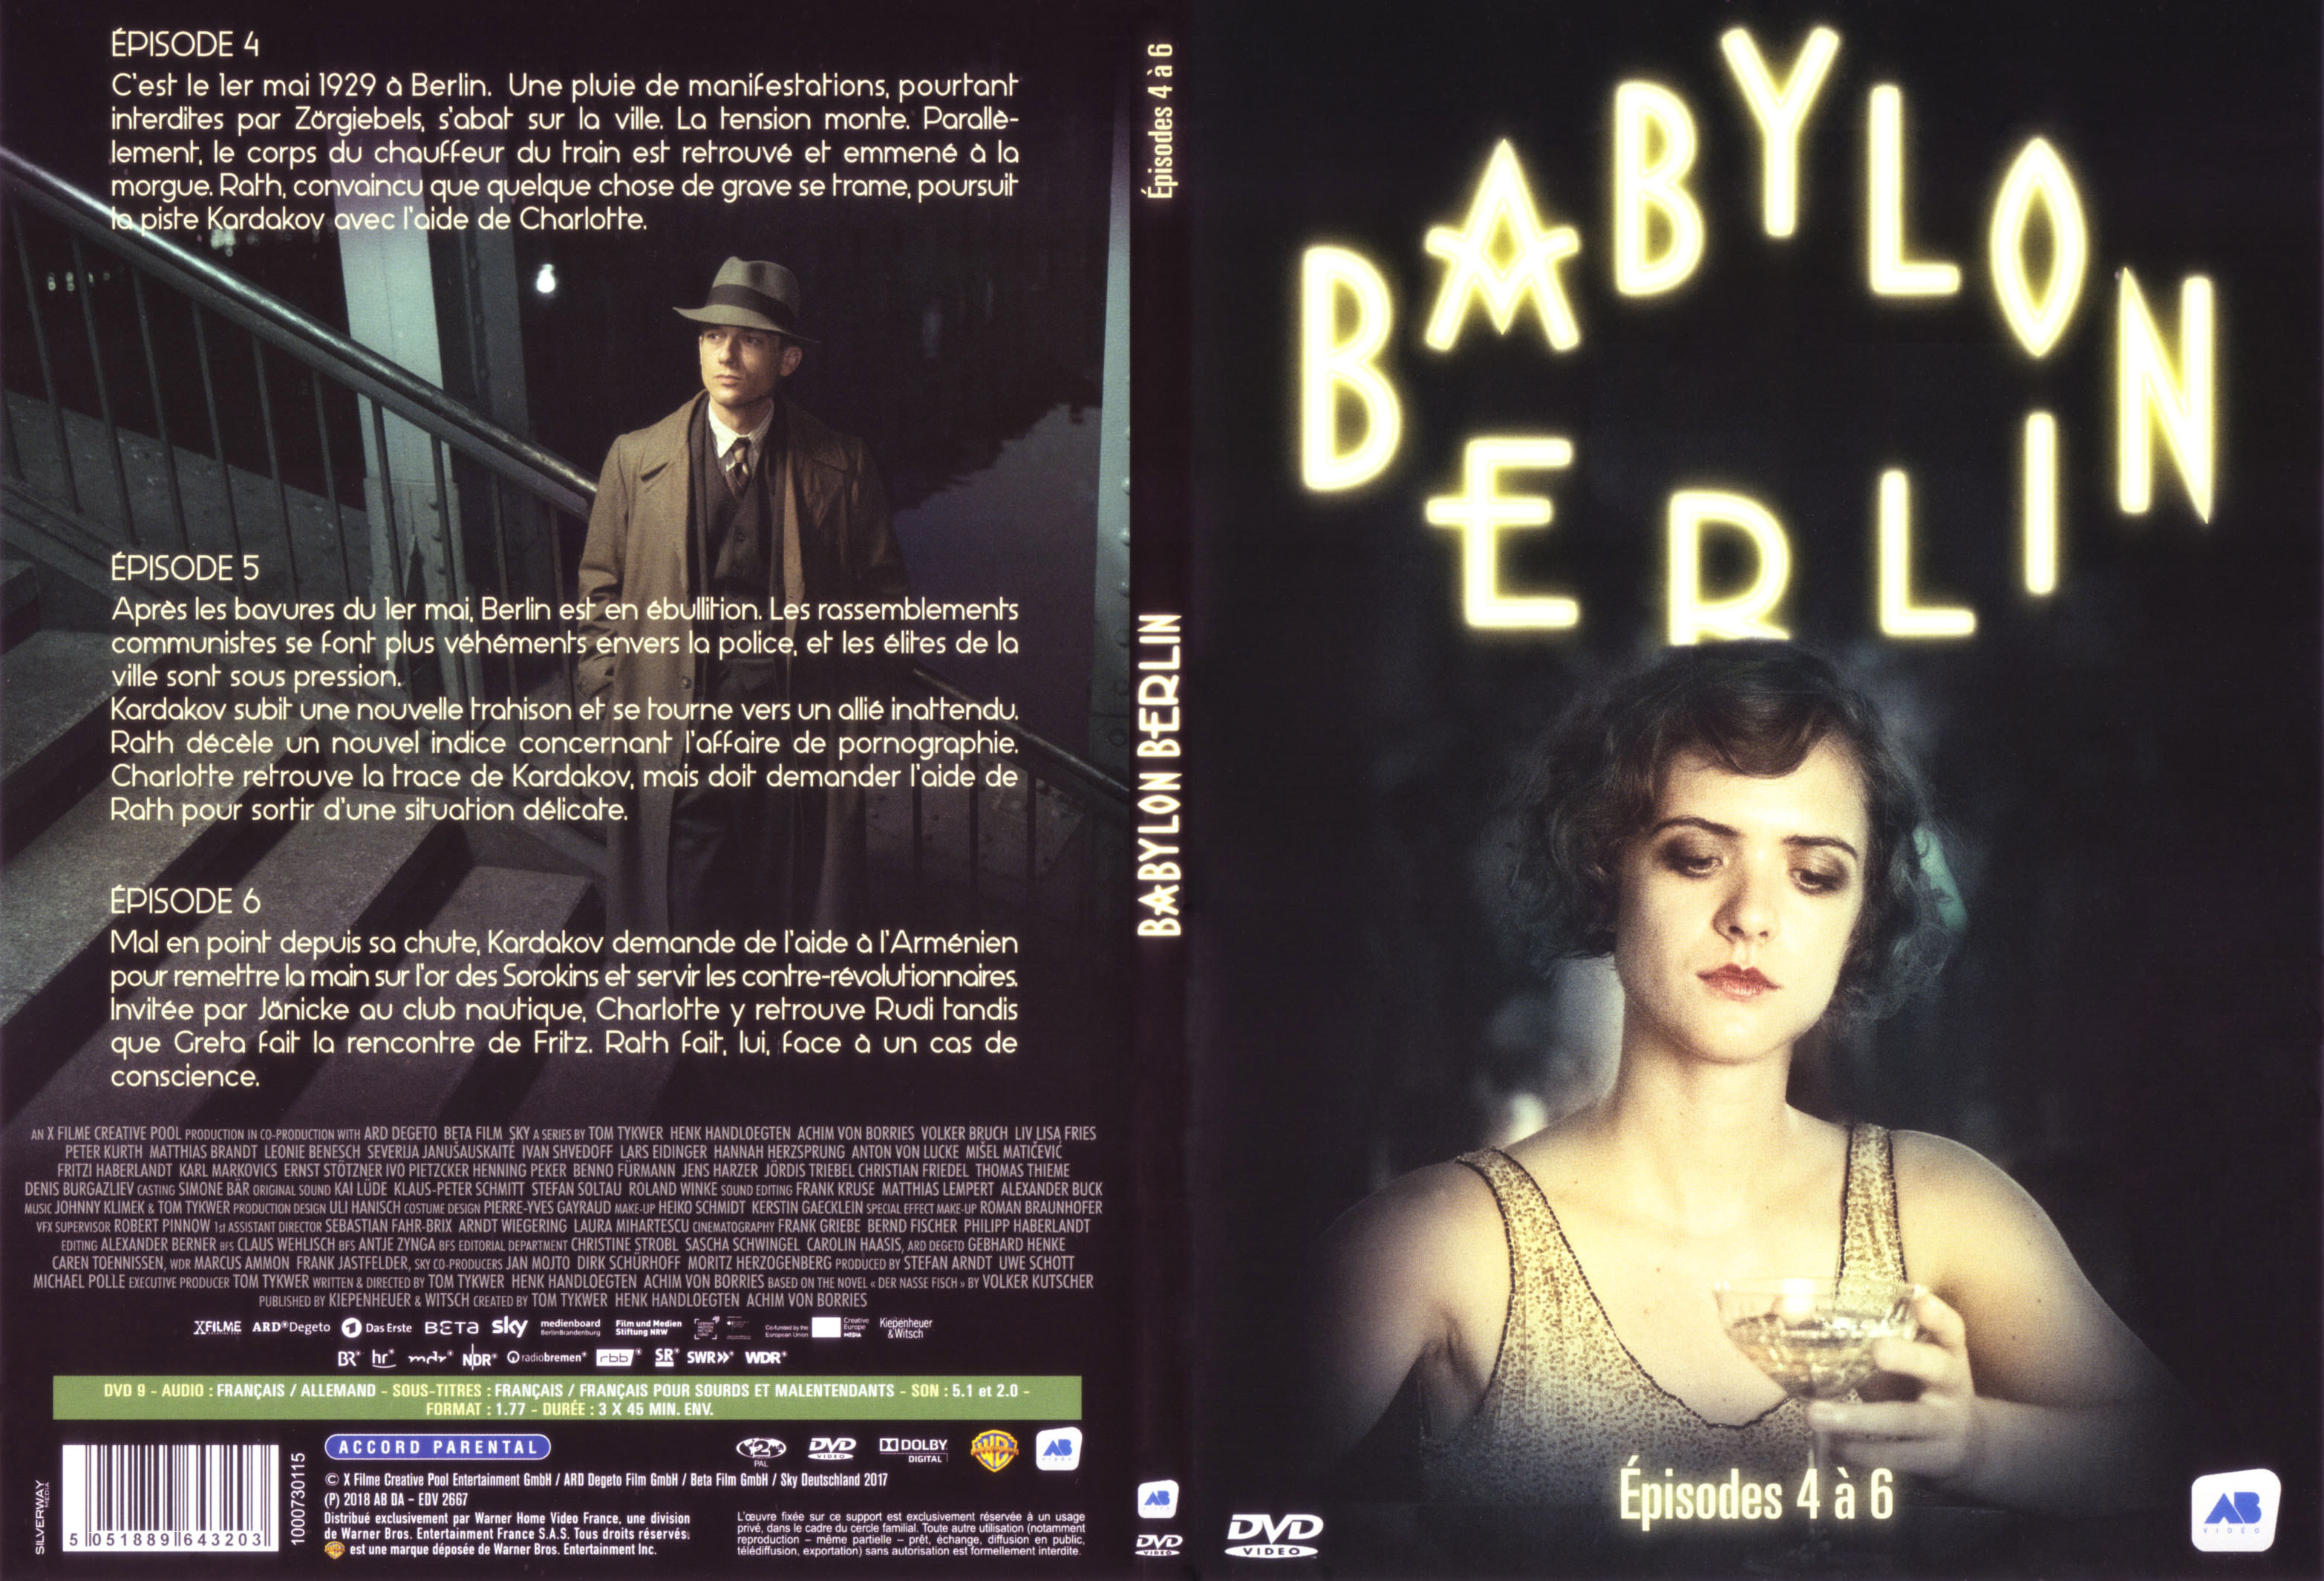 Jaquette DVD Babylon Berlin Ep 4-6